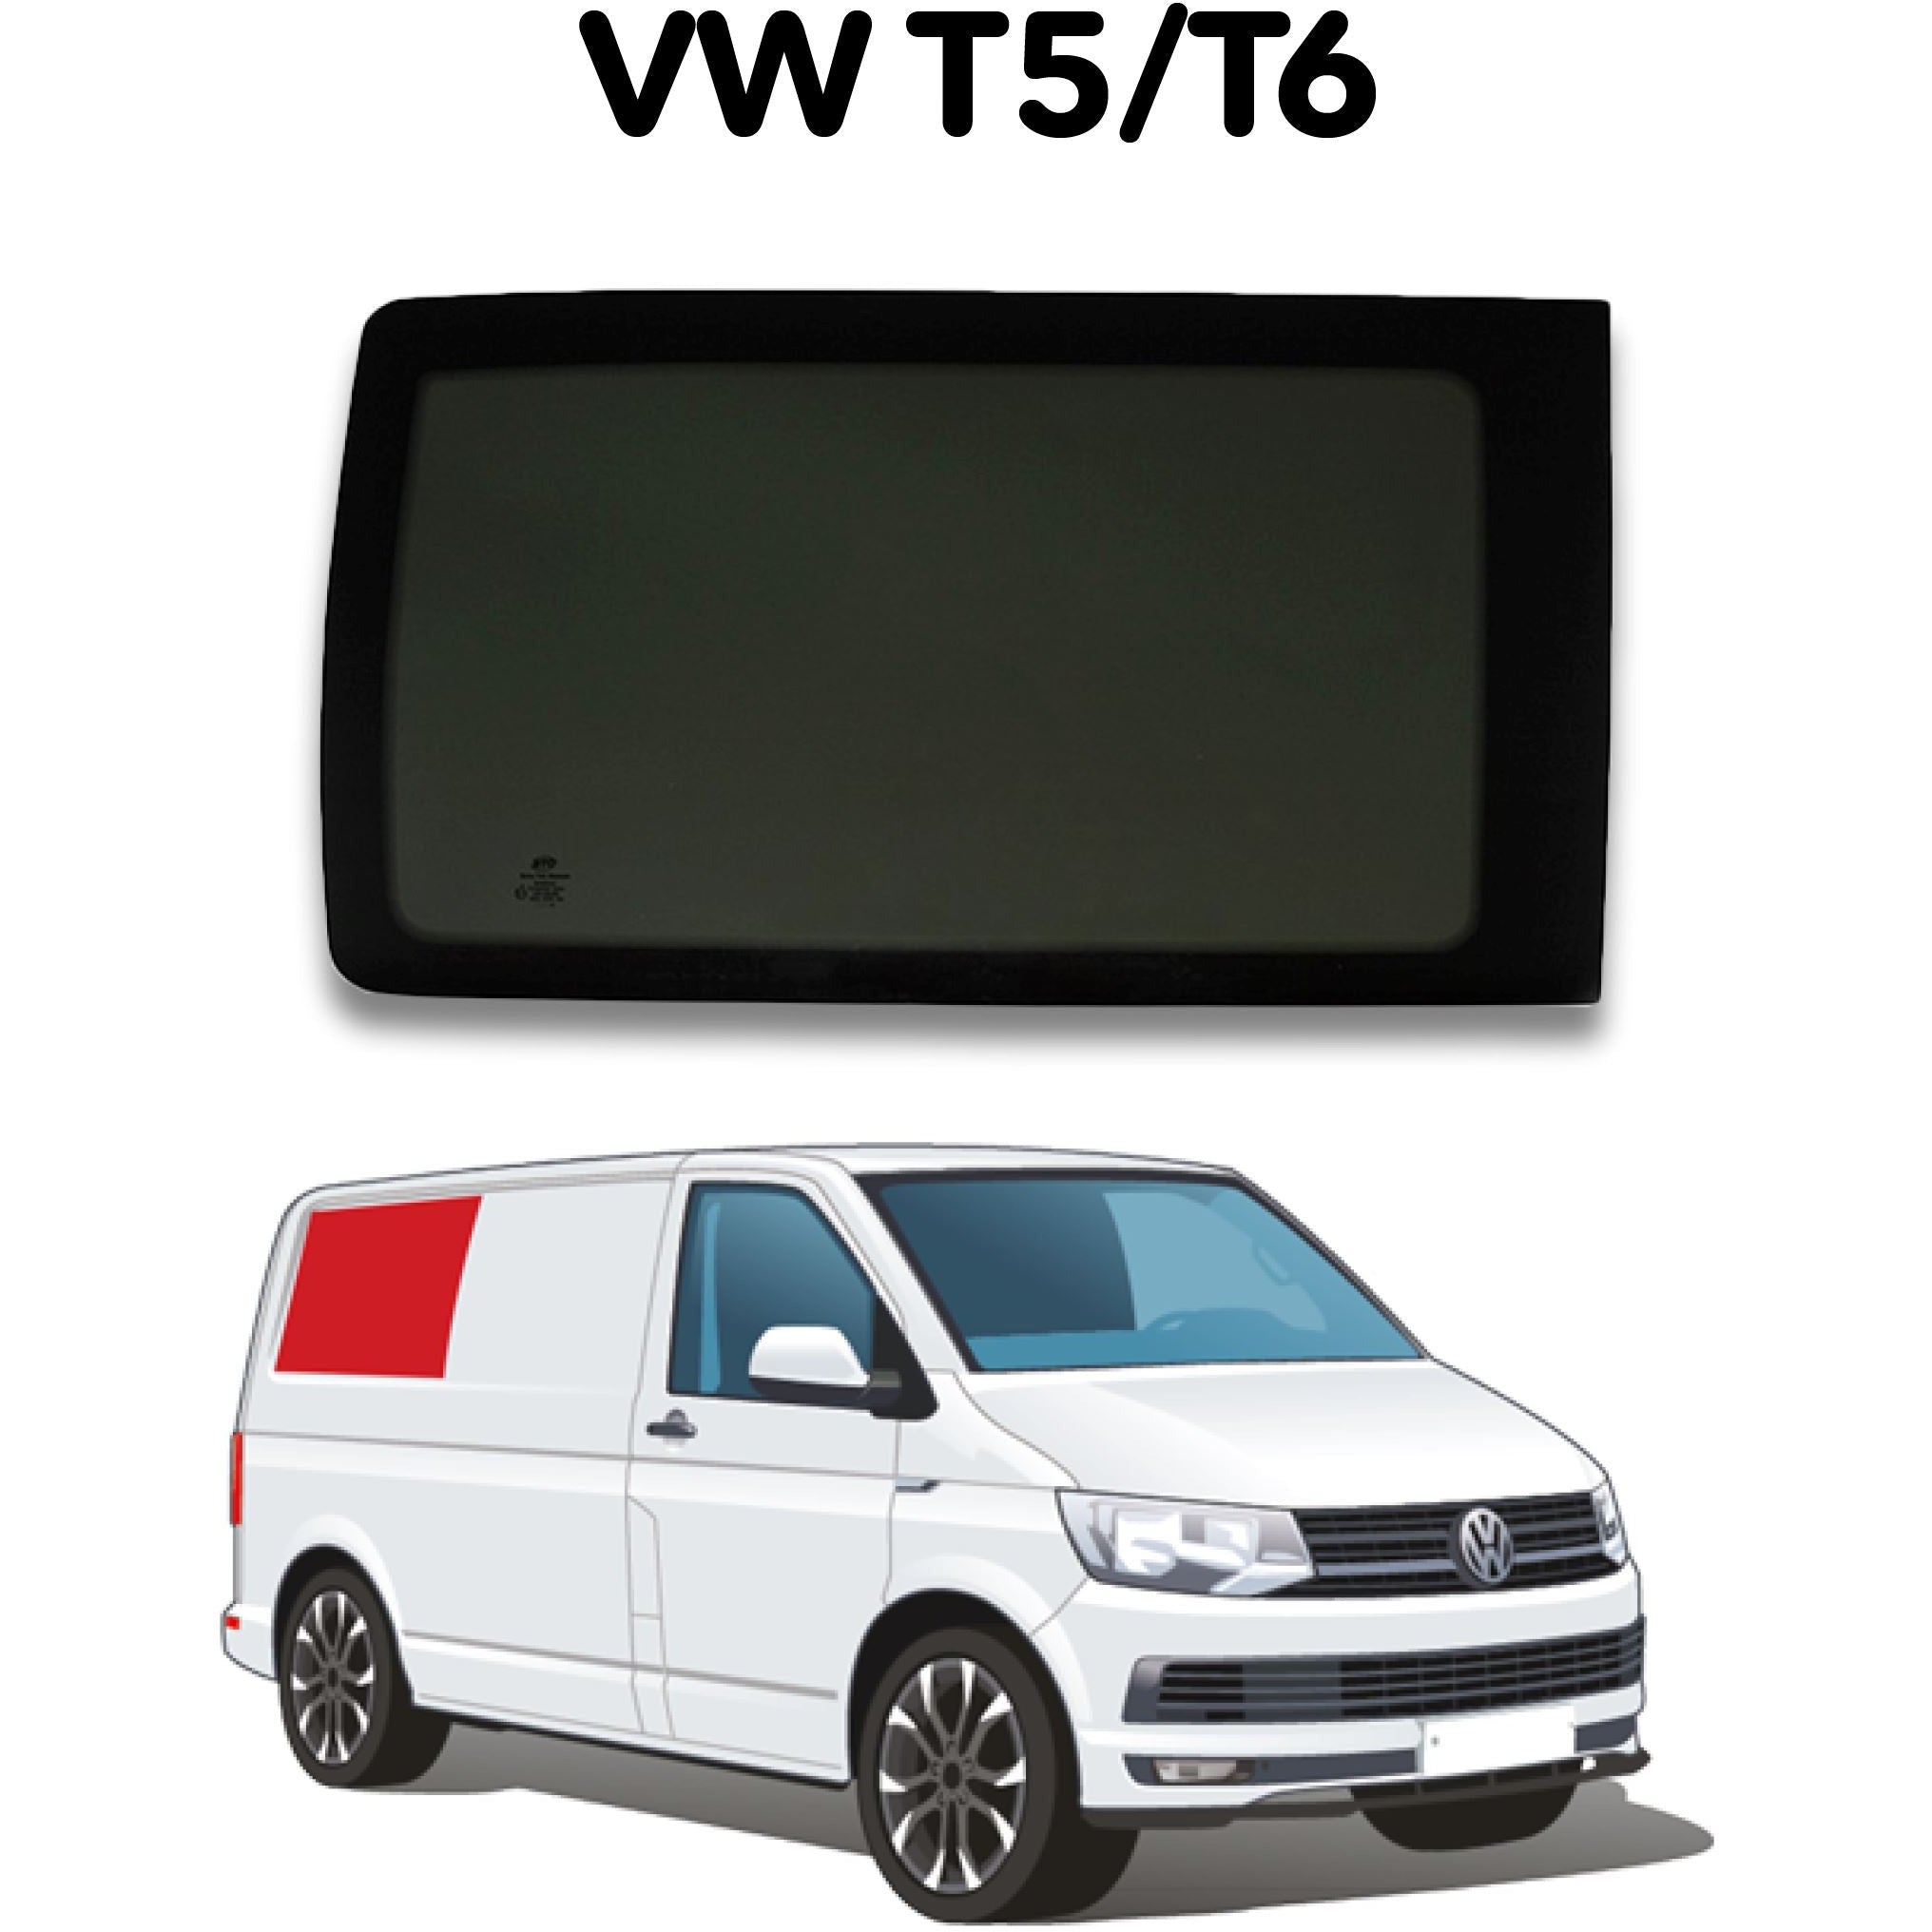 Right Rear Quarter Window VW T5 / T6 Camper Glass by Kiravans 